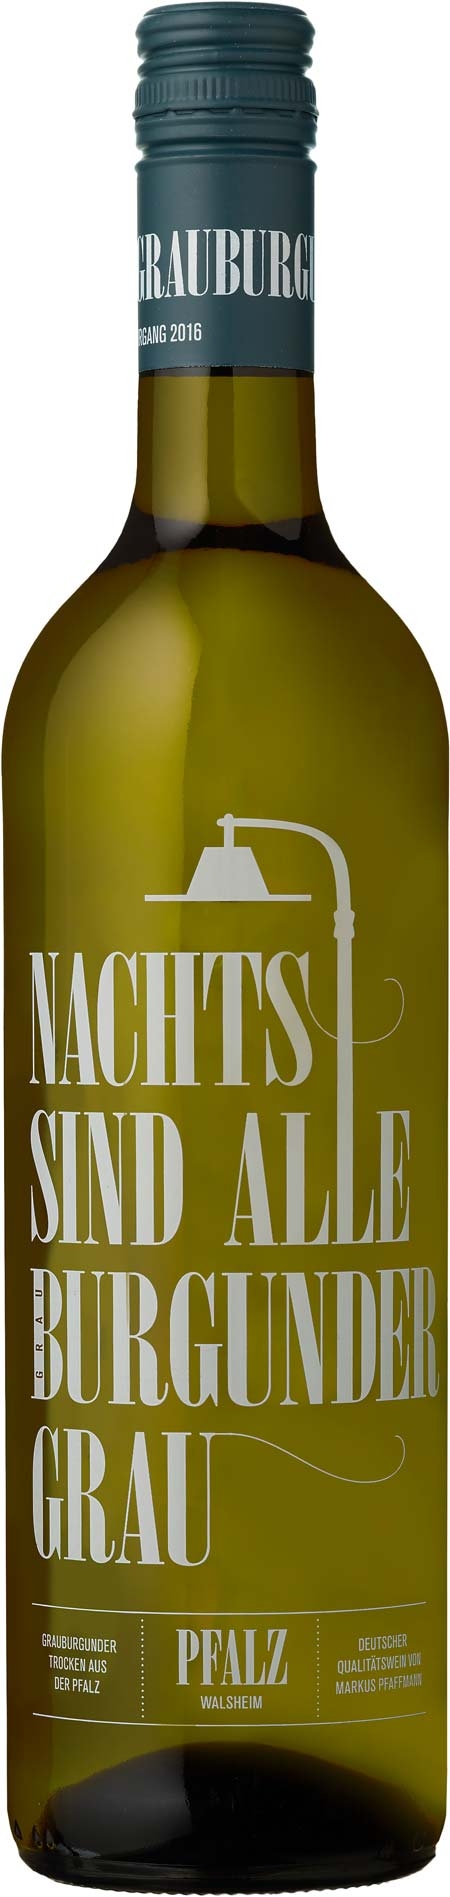 Nachts sind alle Burgunder grau - Qualitätswein - trocken - Weingut Karl Pfaffmann